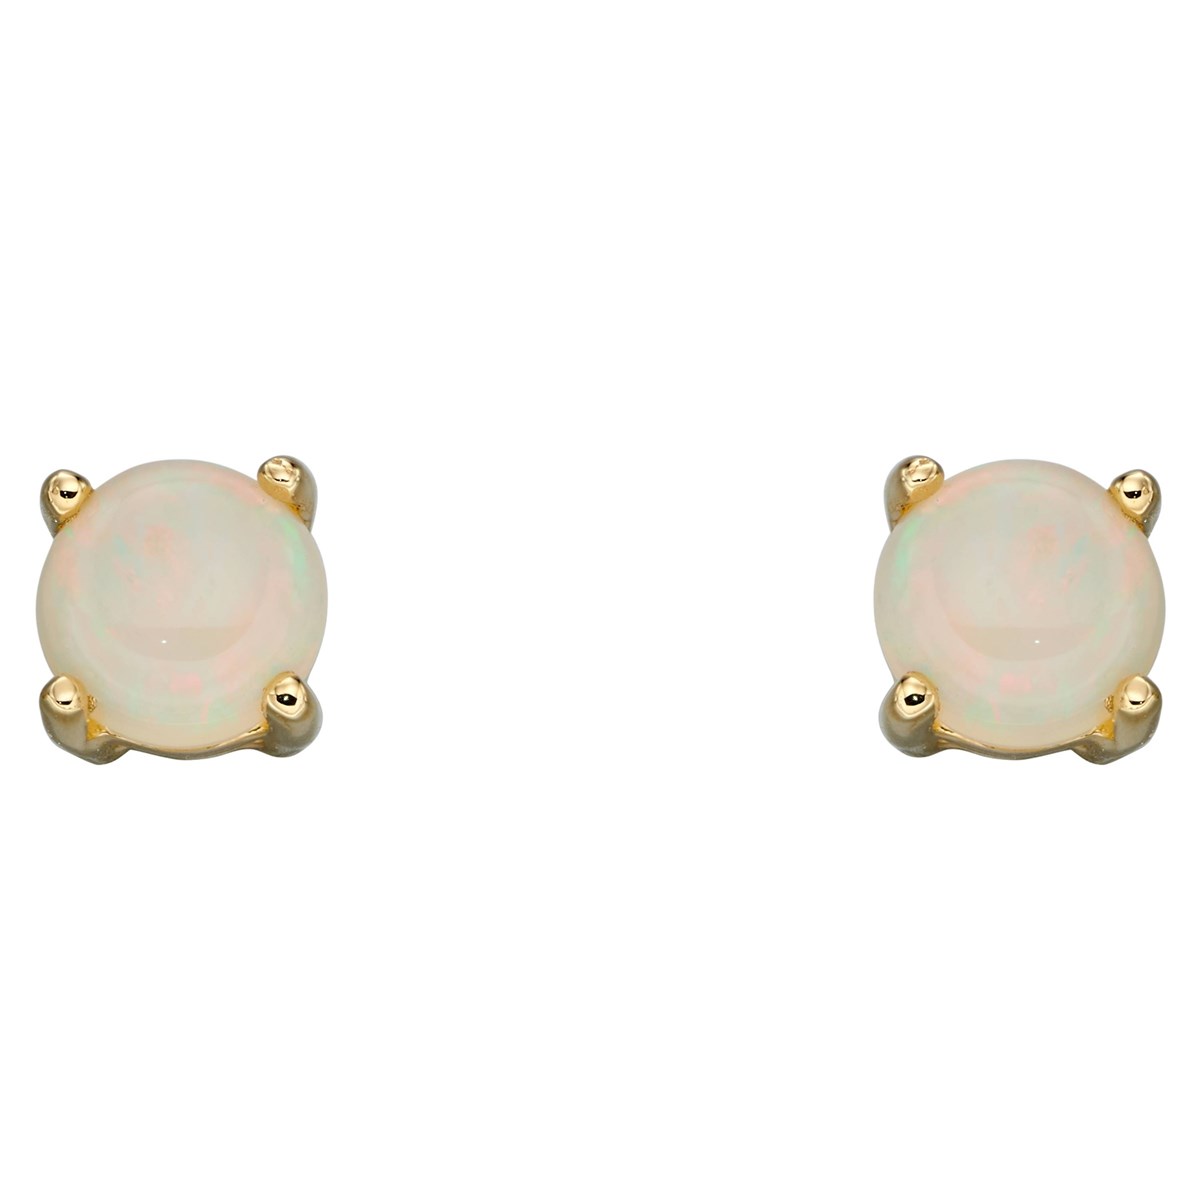 Boucle d'oreille opal en or 375/1000